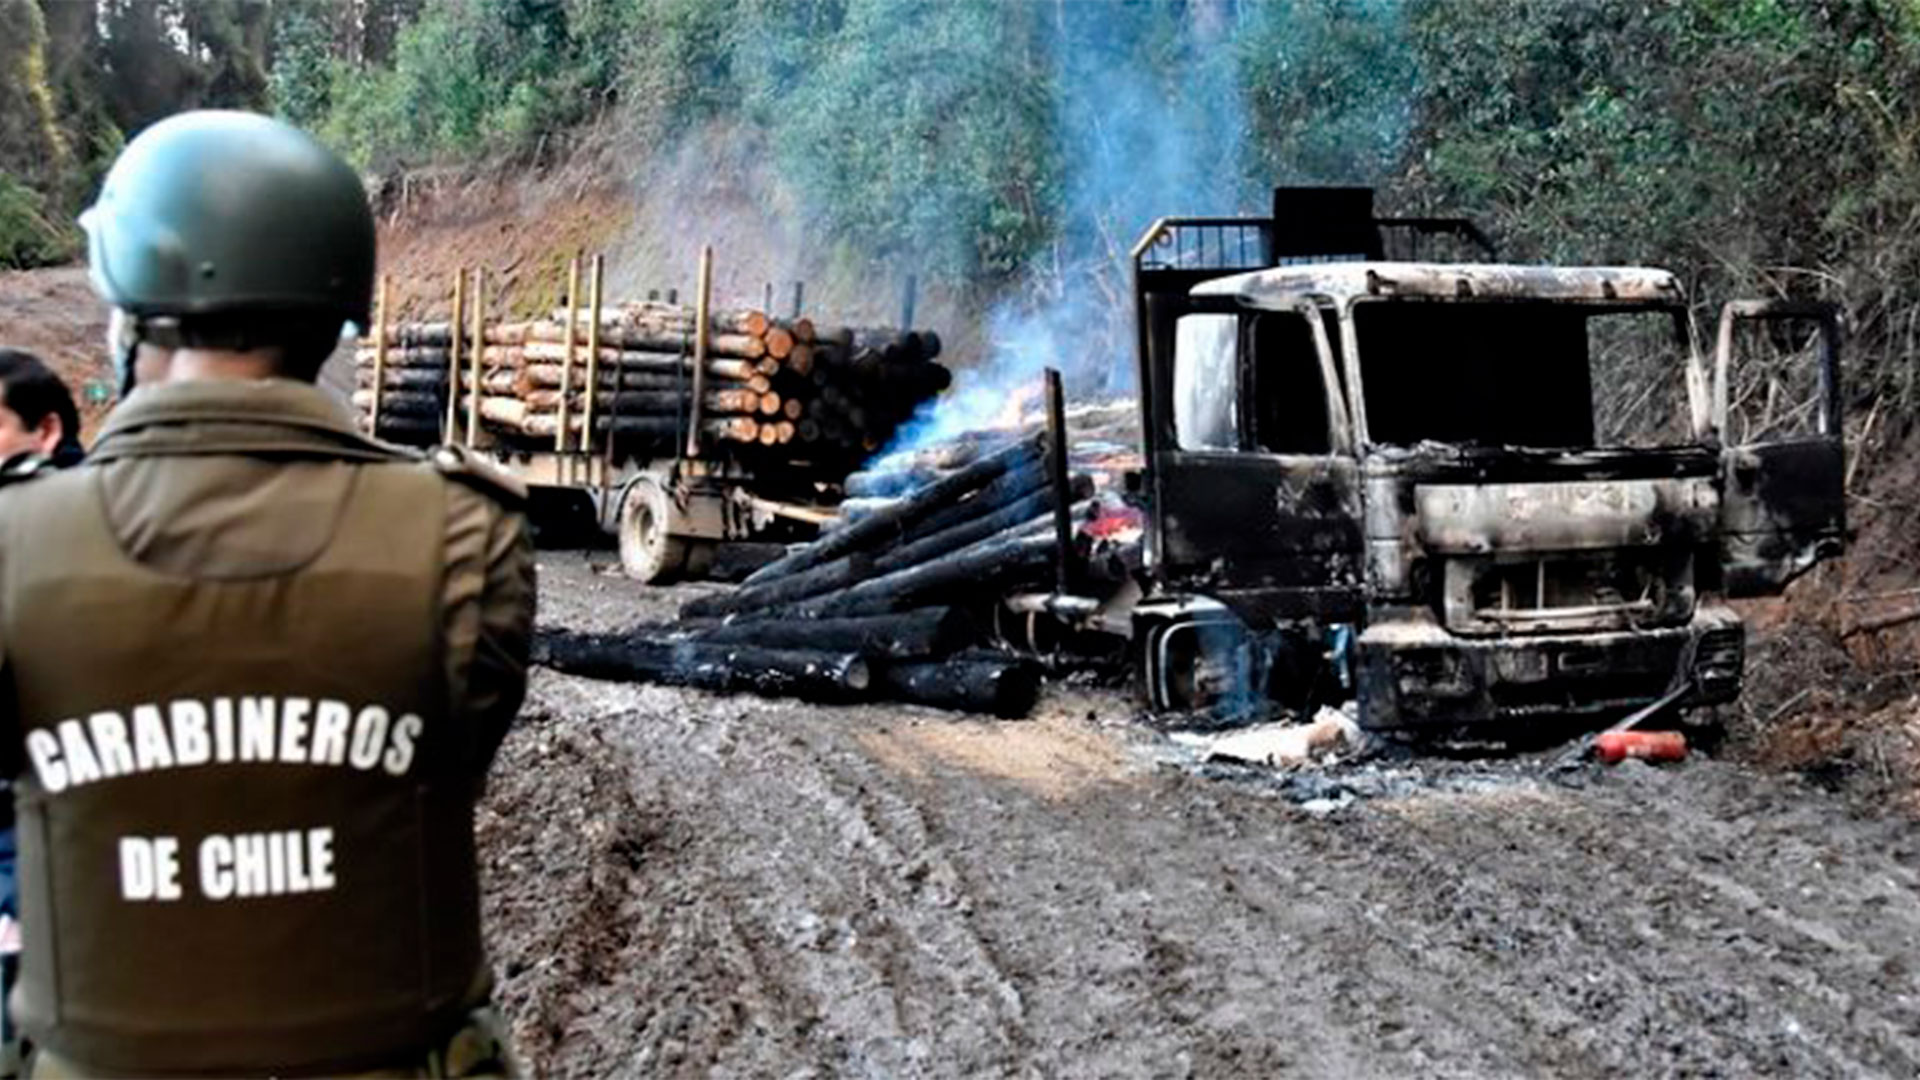 La Araucanía chilena anunció la creación de un fondo para compensar a las empresas afectadas por la violencia mapuche